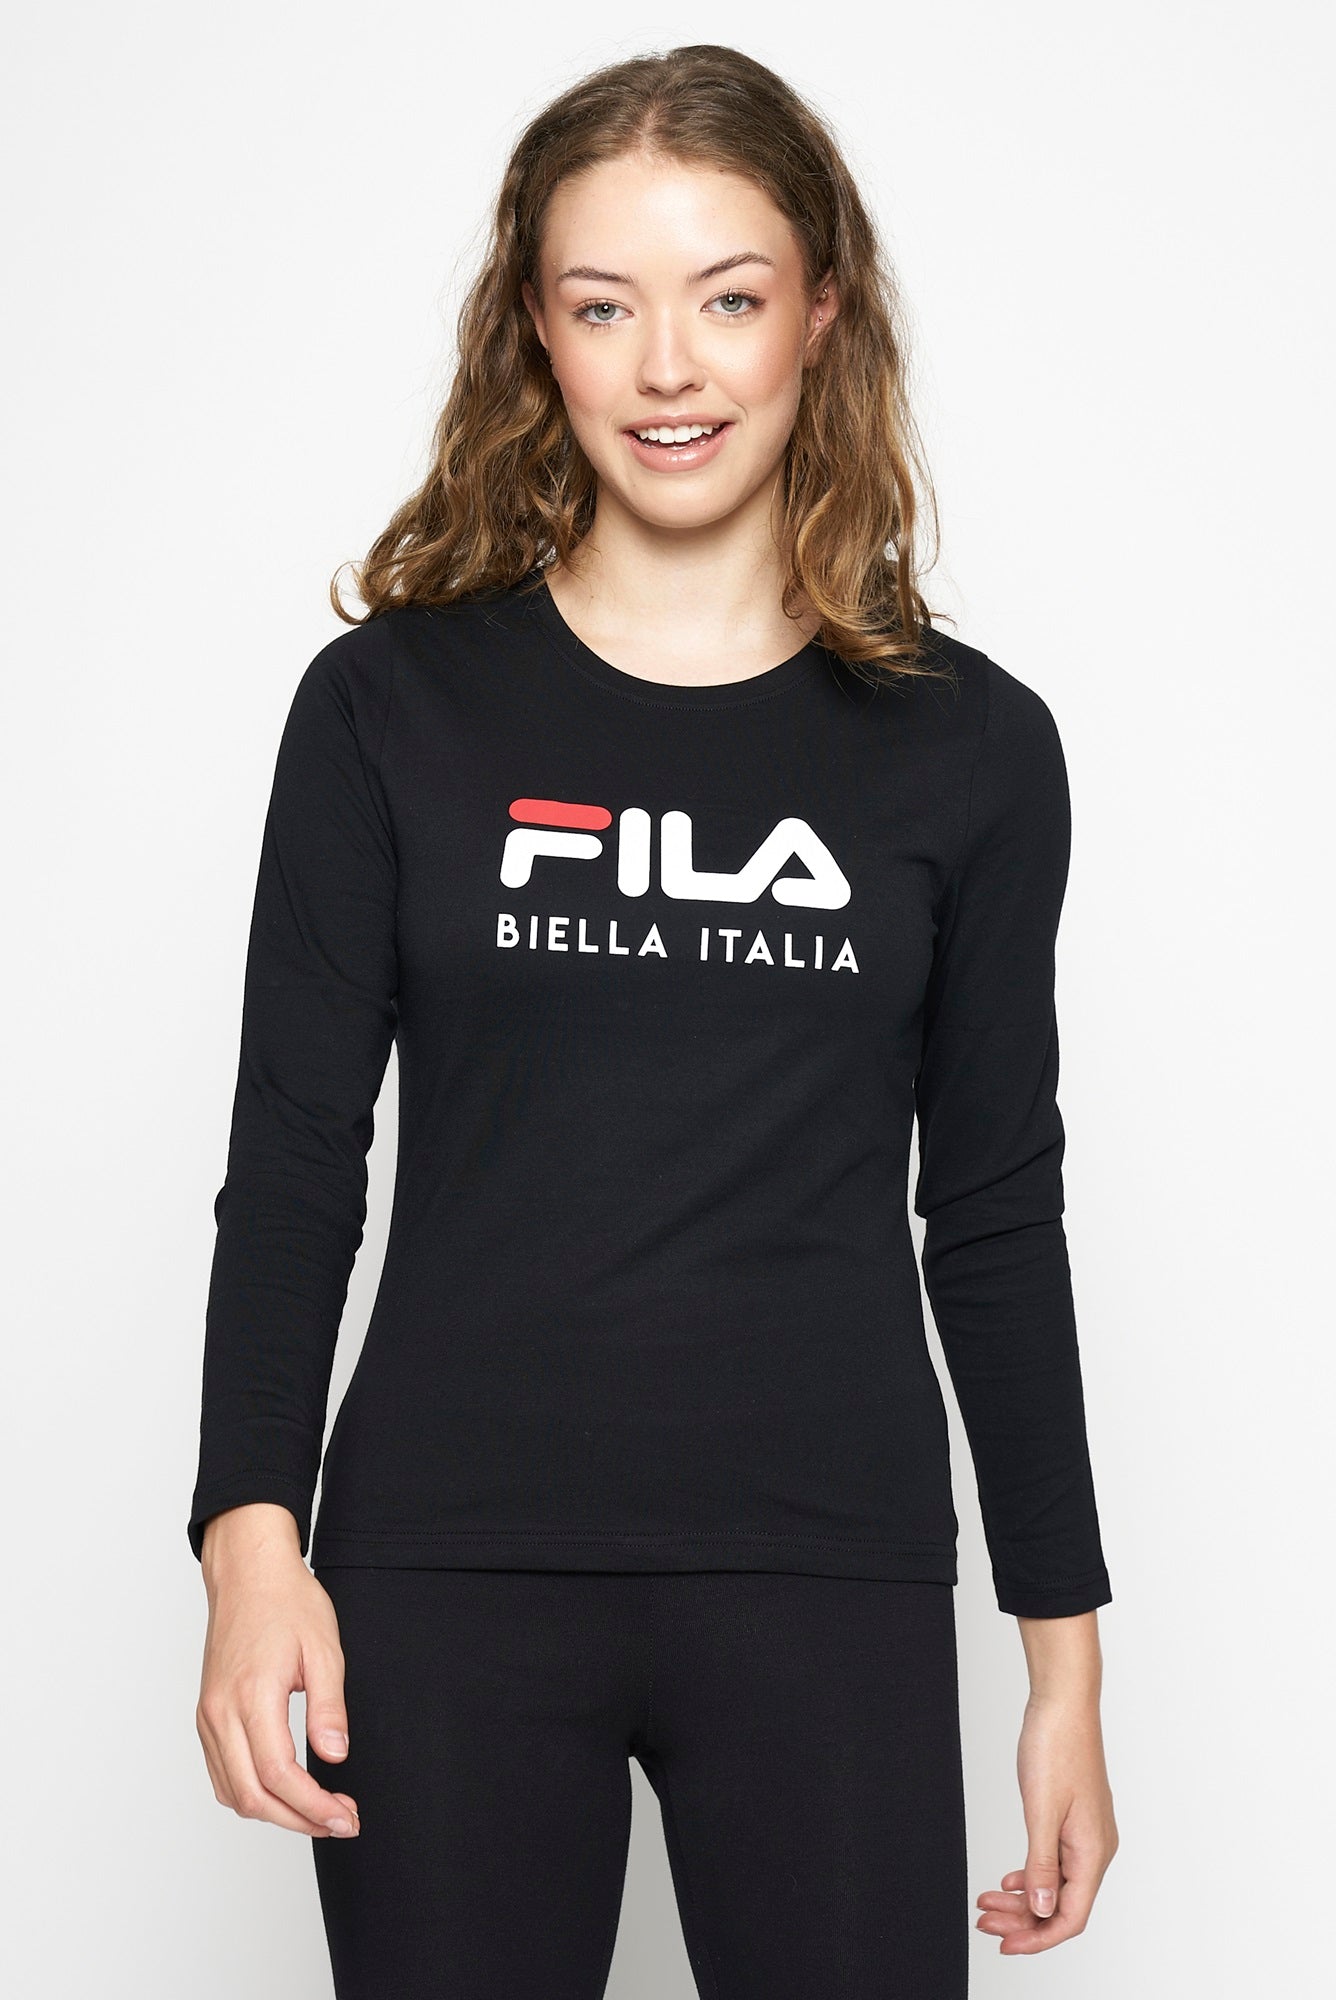 FILA Women's Eileen Long Sleeve Top